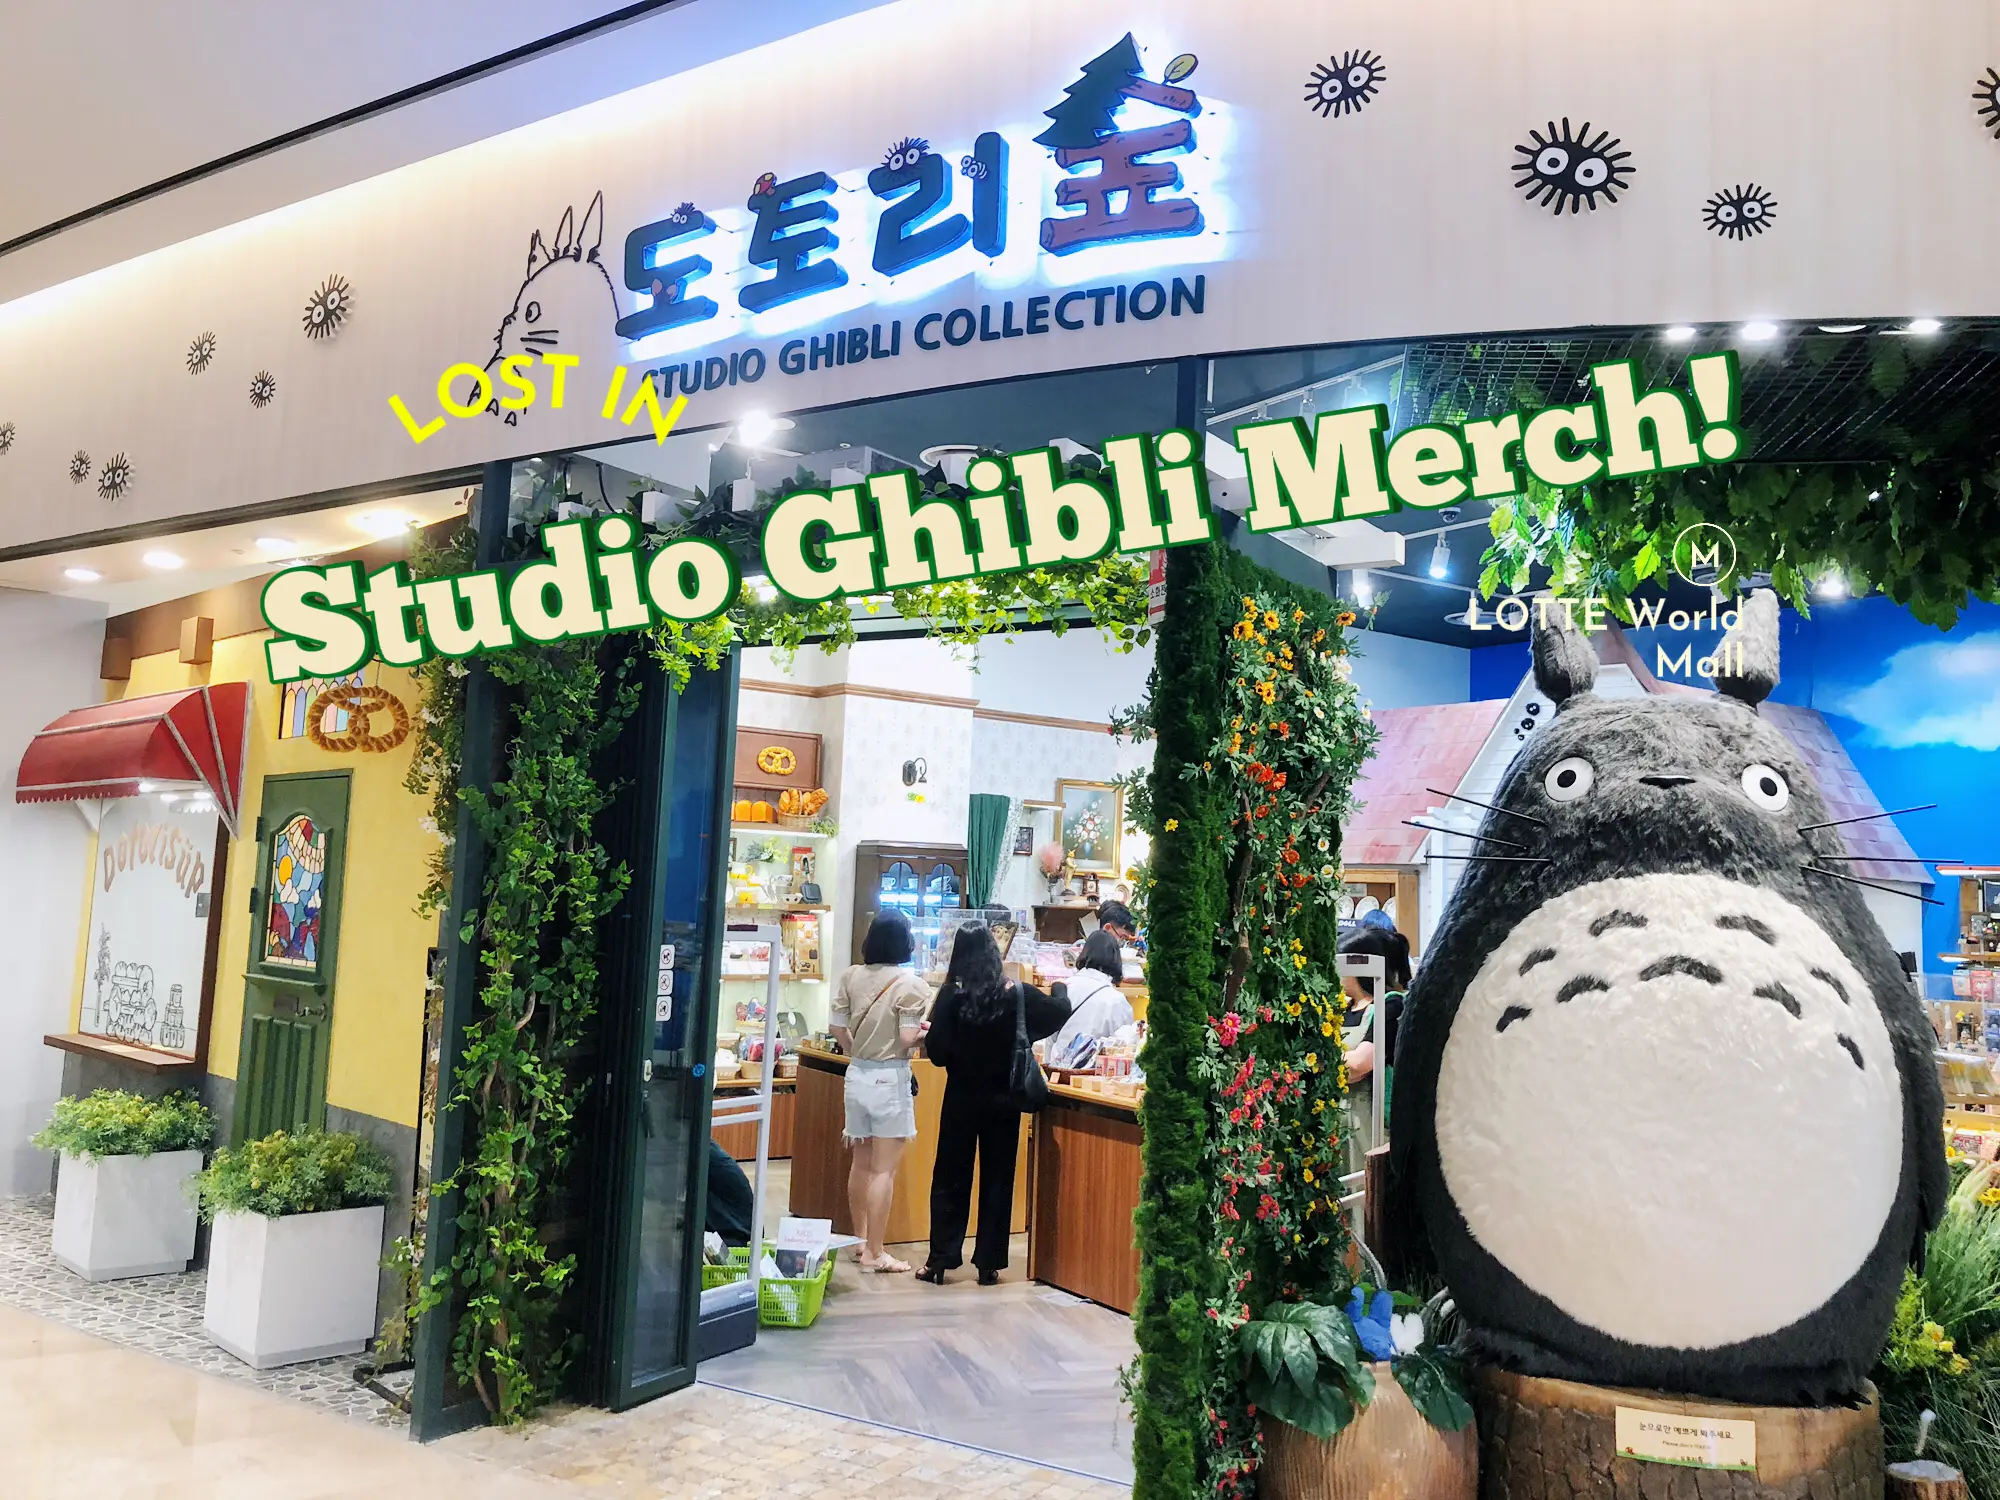 The Ghibli.Store